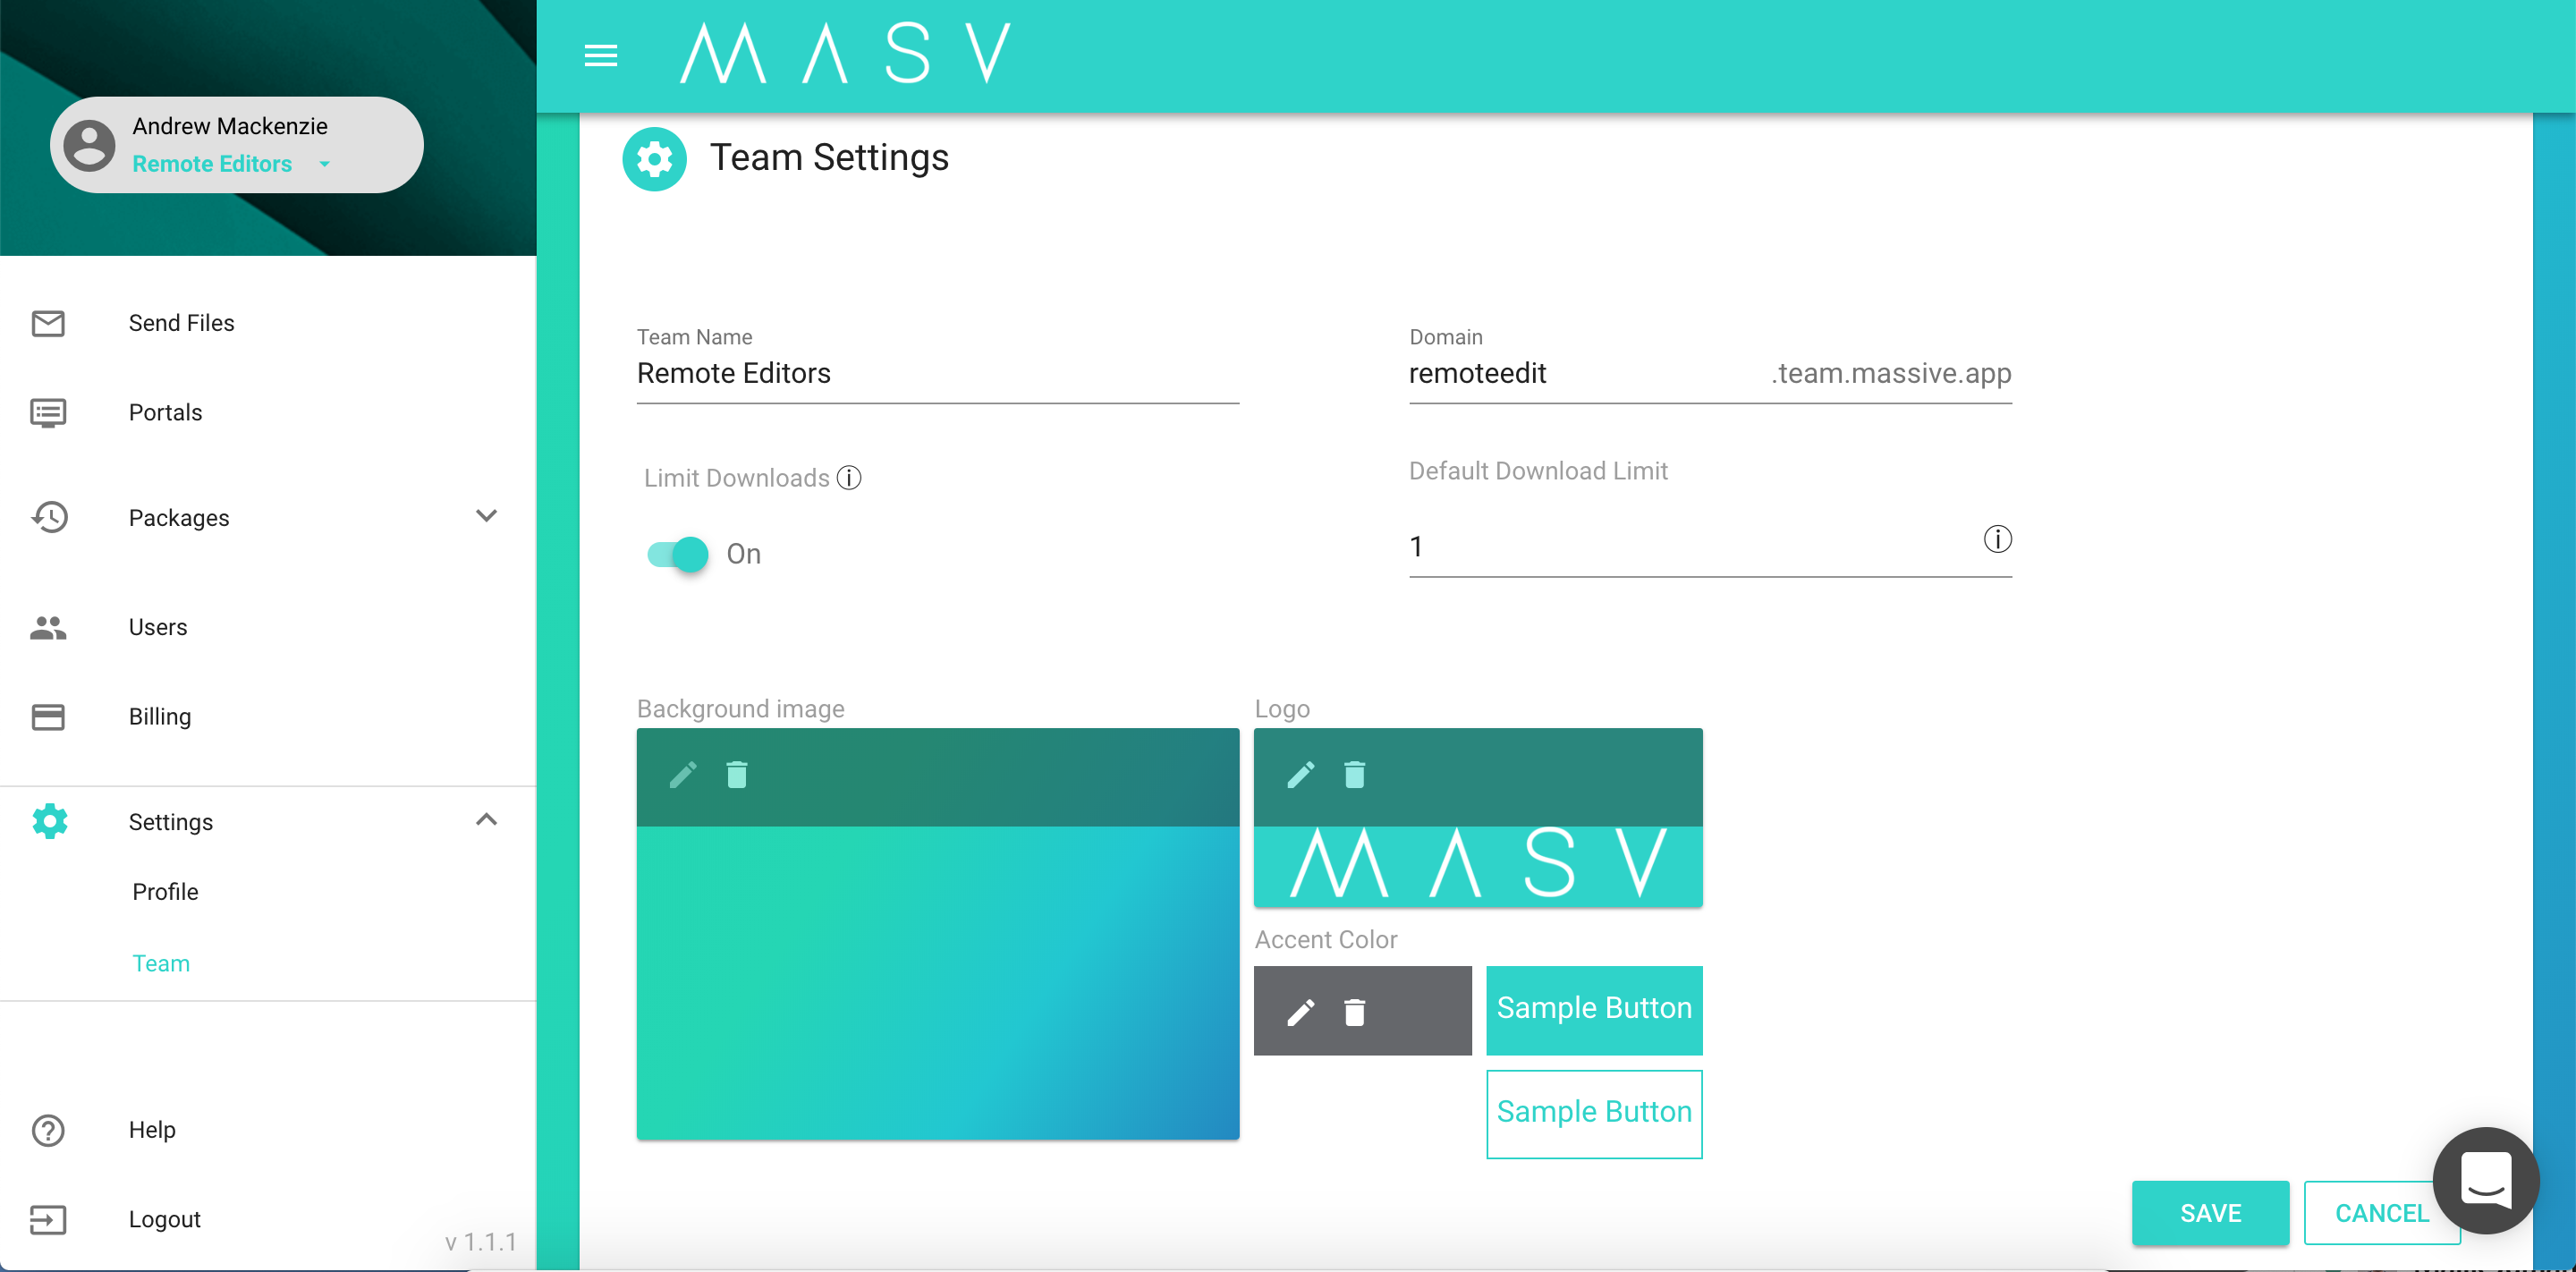 MASV Branding settings